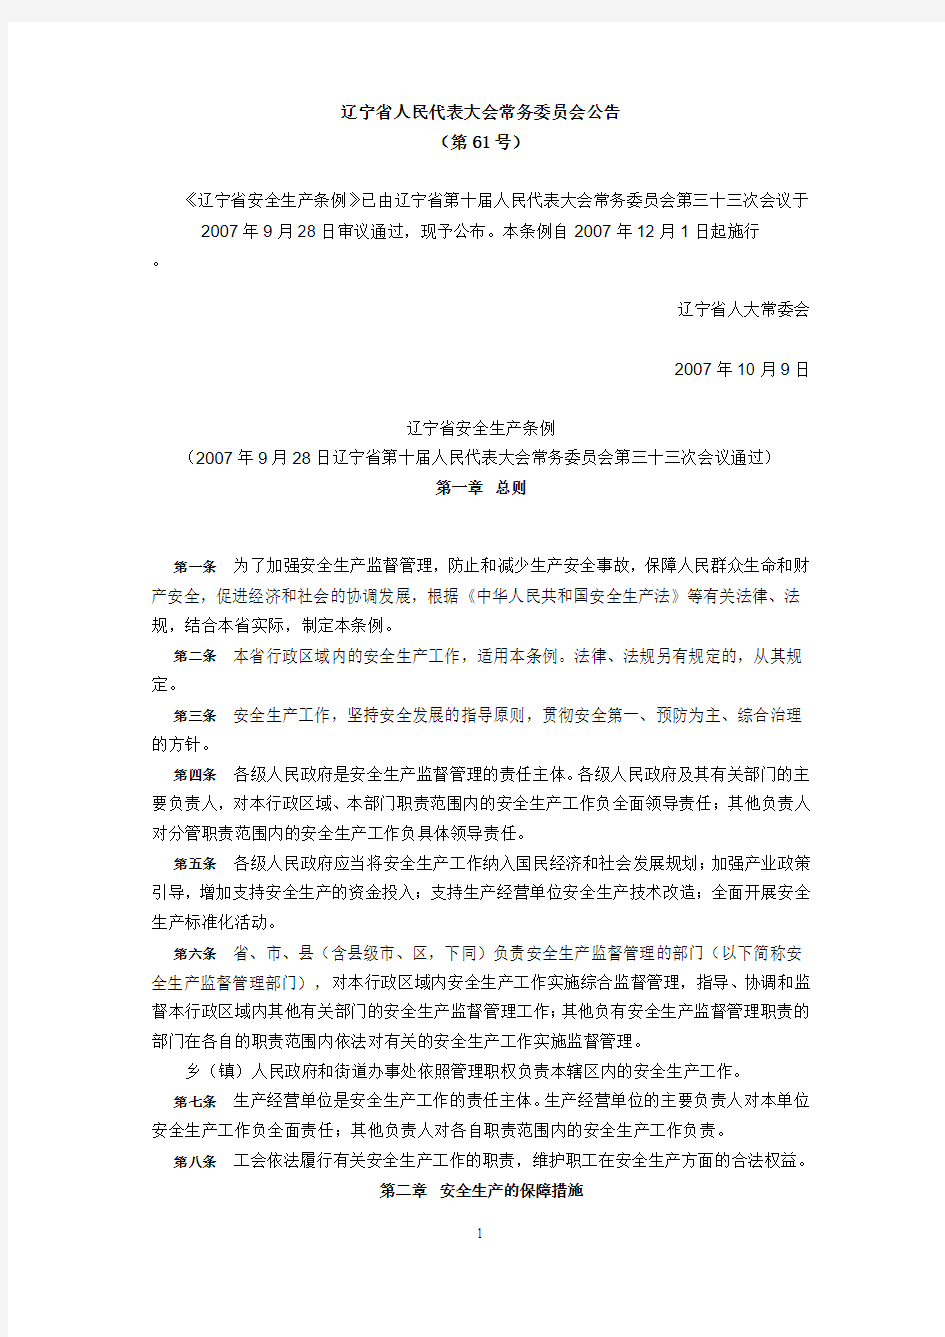 2007年12月1日实施61号《辽宁省安全生产条例》